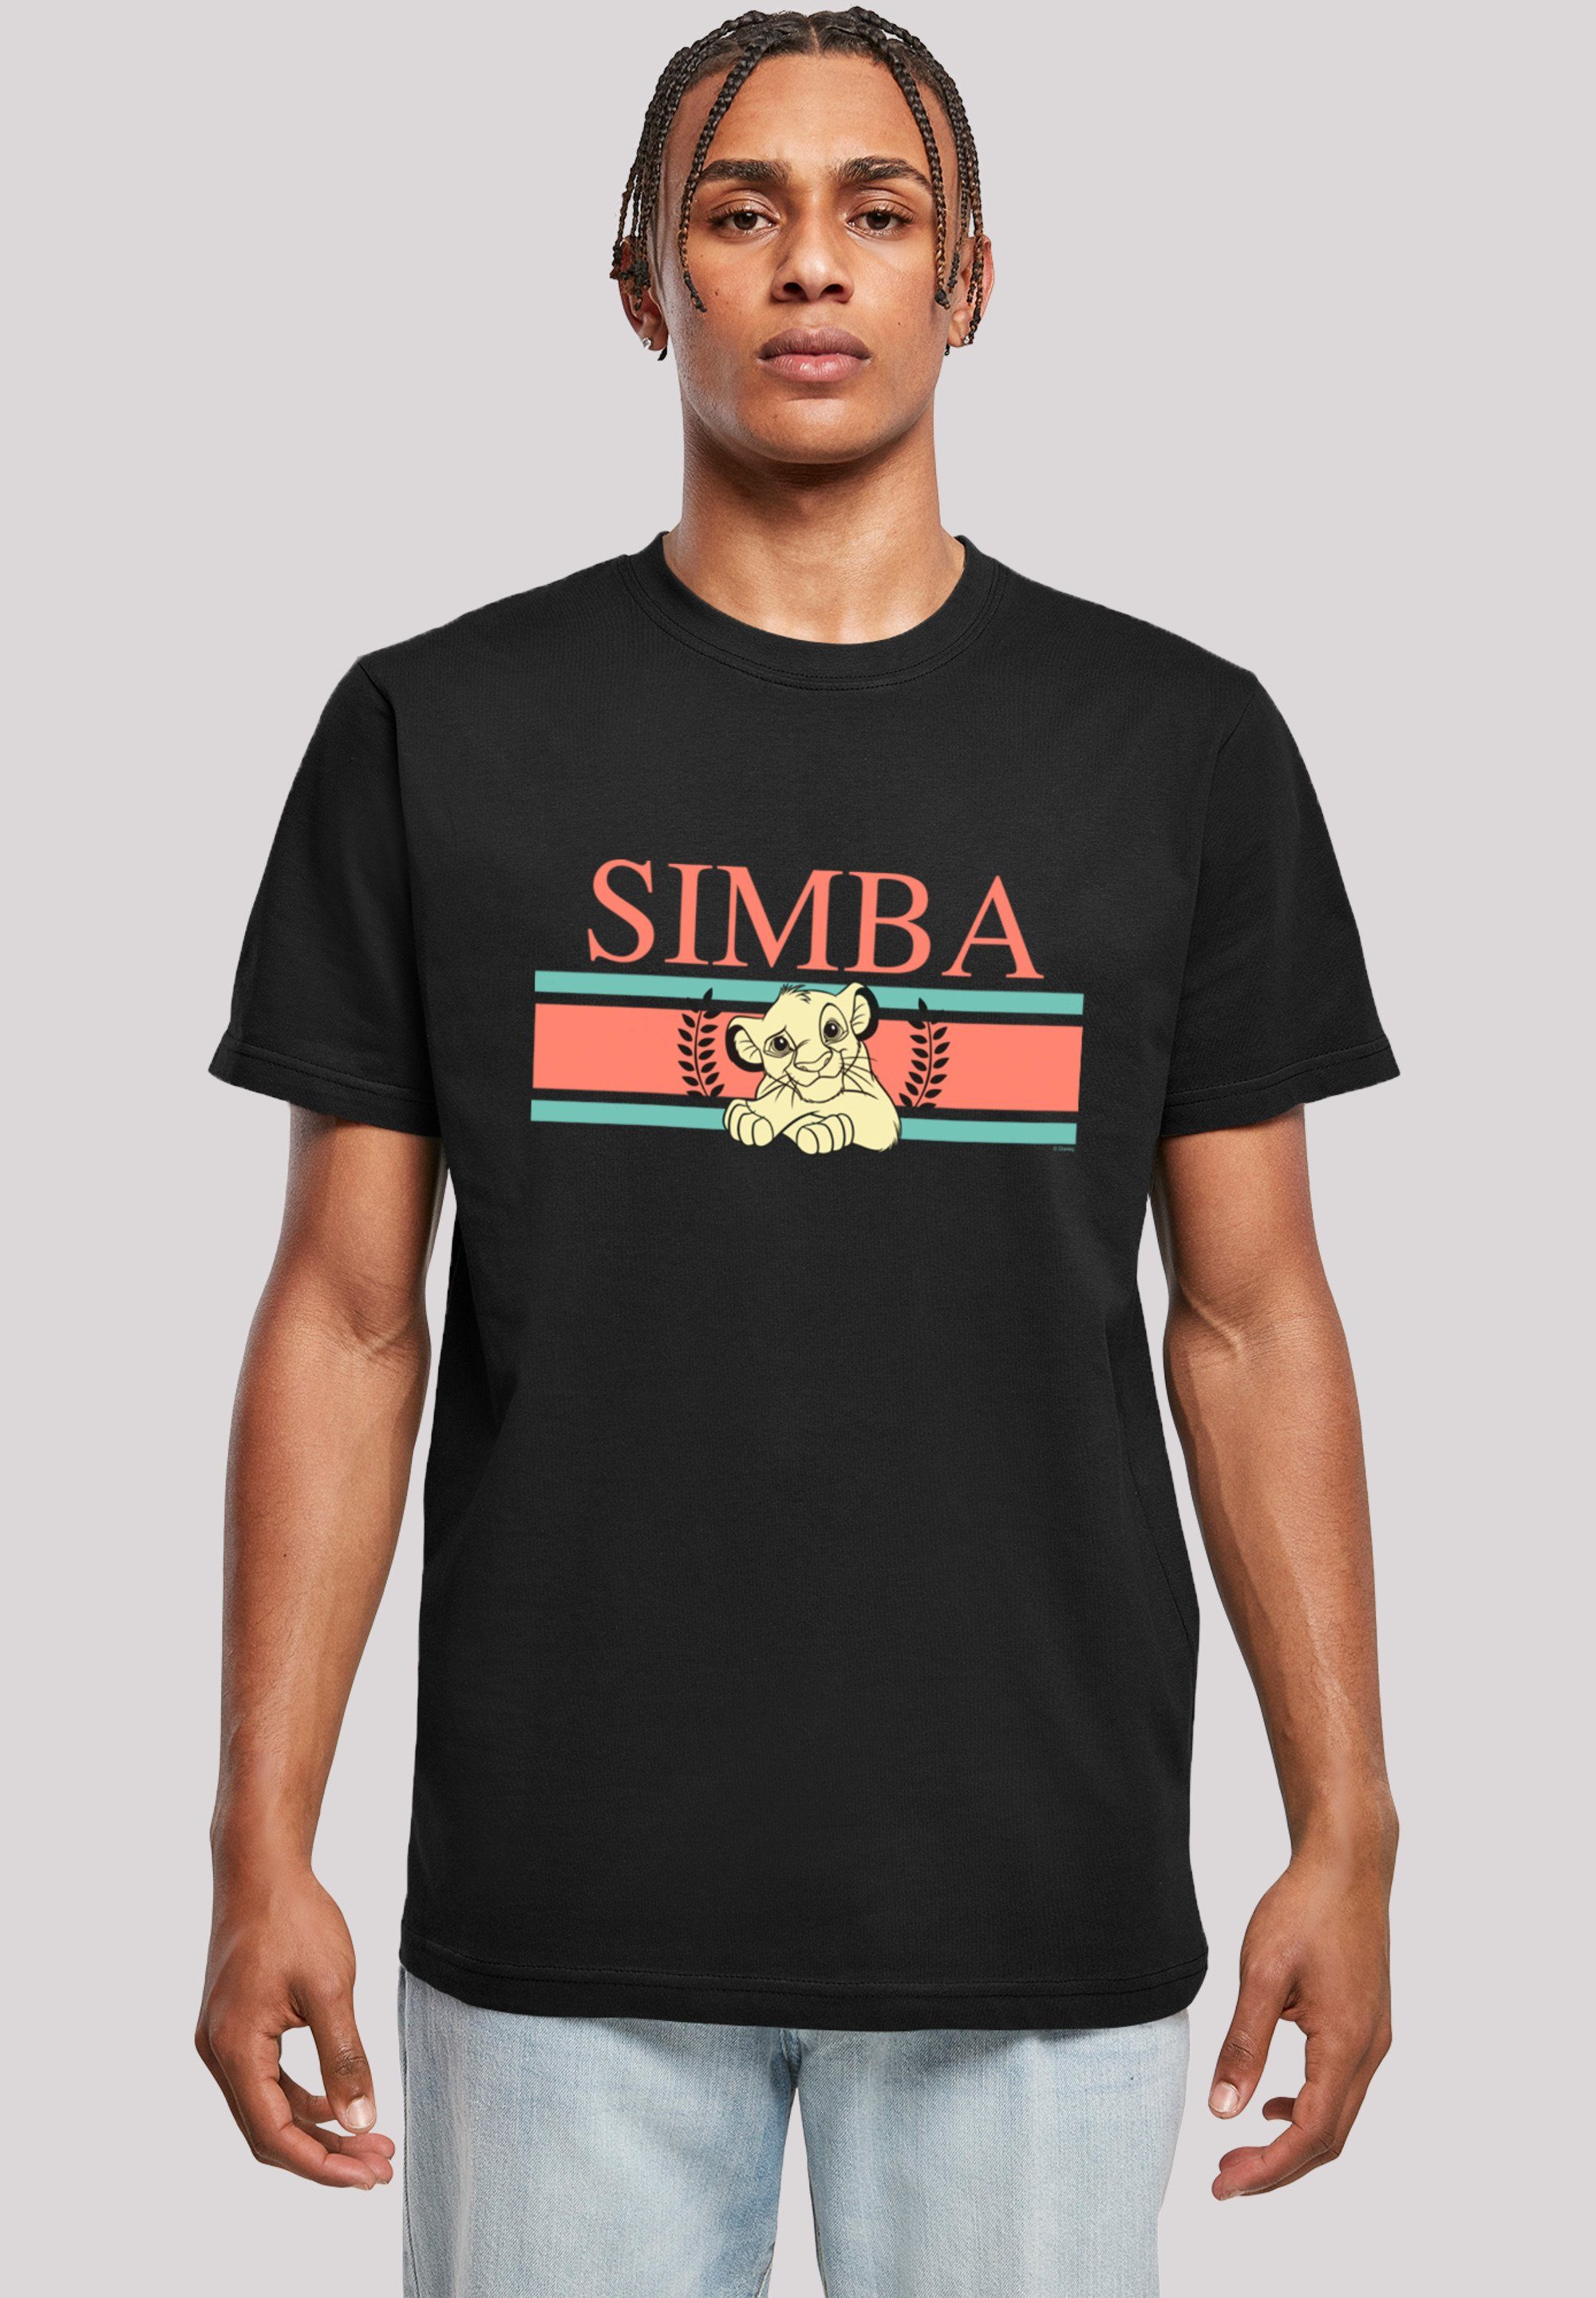 F4NT4STIC T-Shirt Disney König der Löwen Simba Stripes Print schwarz